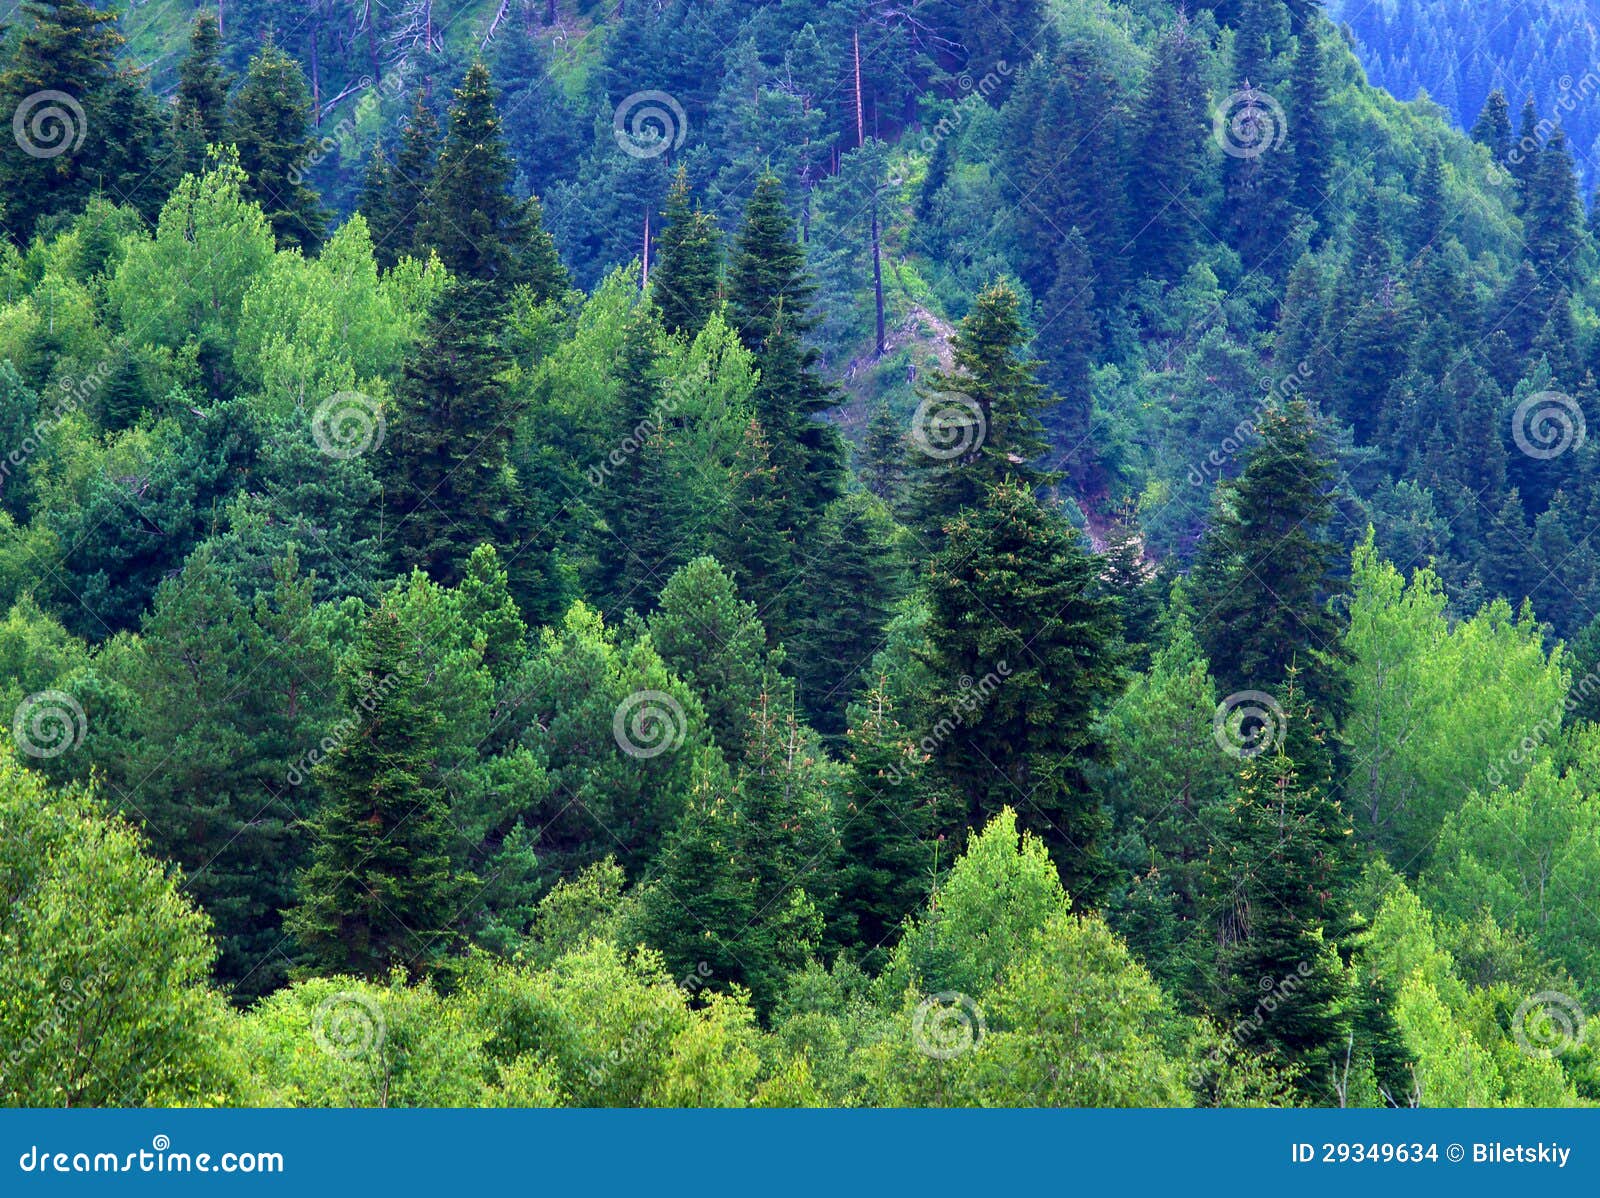 Лесные ресурсы фото в формате jpg